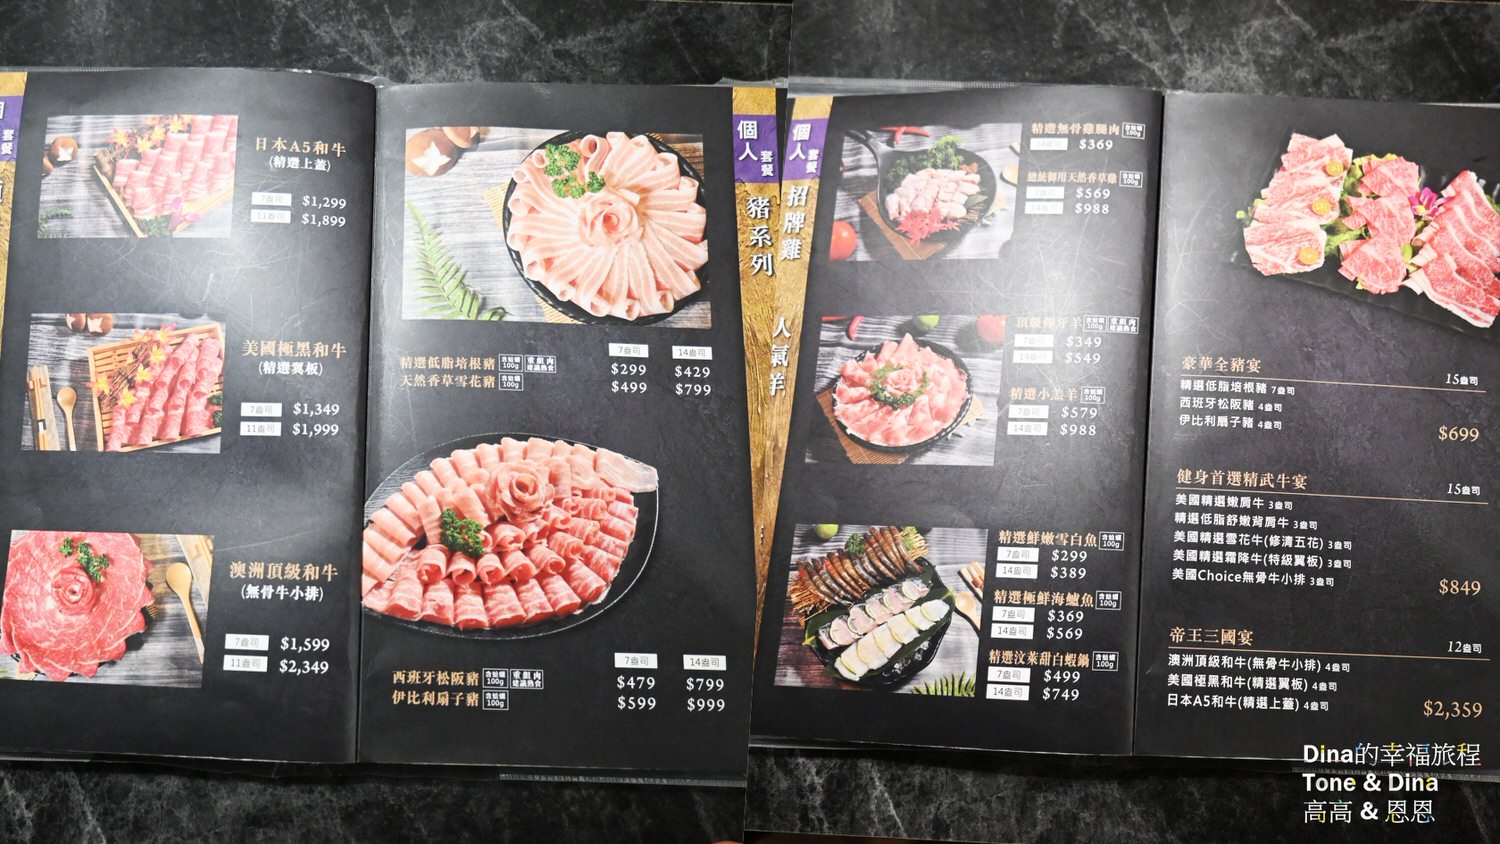 17饌澤原超市火鍋